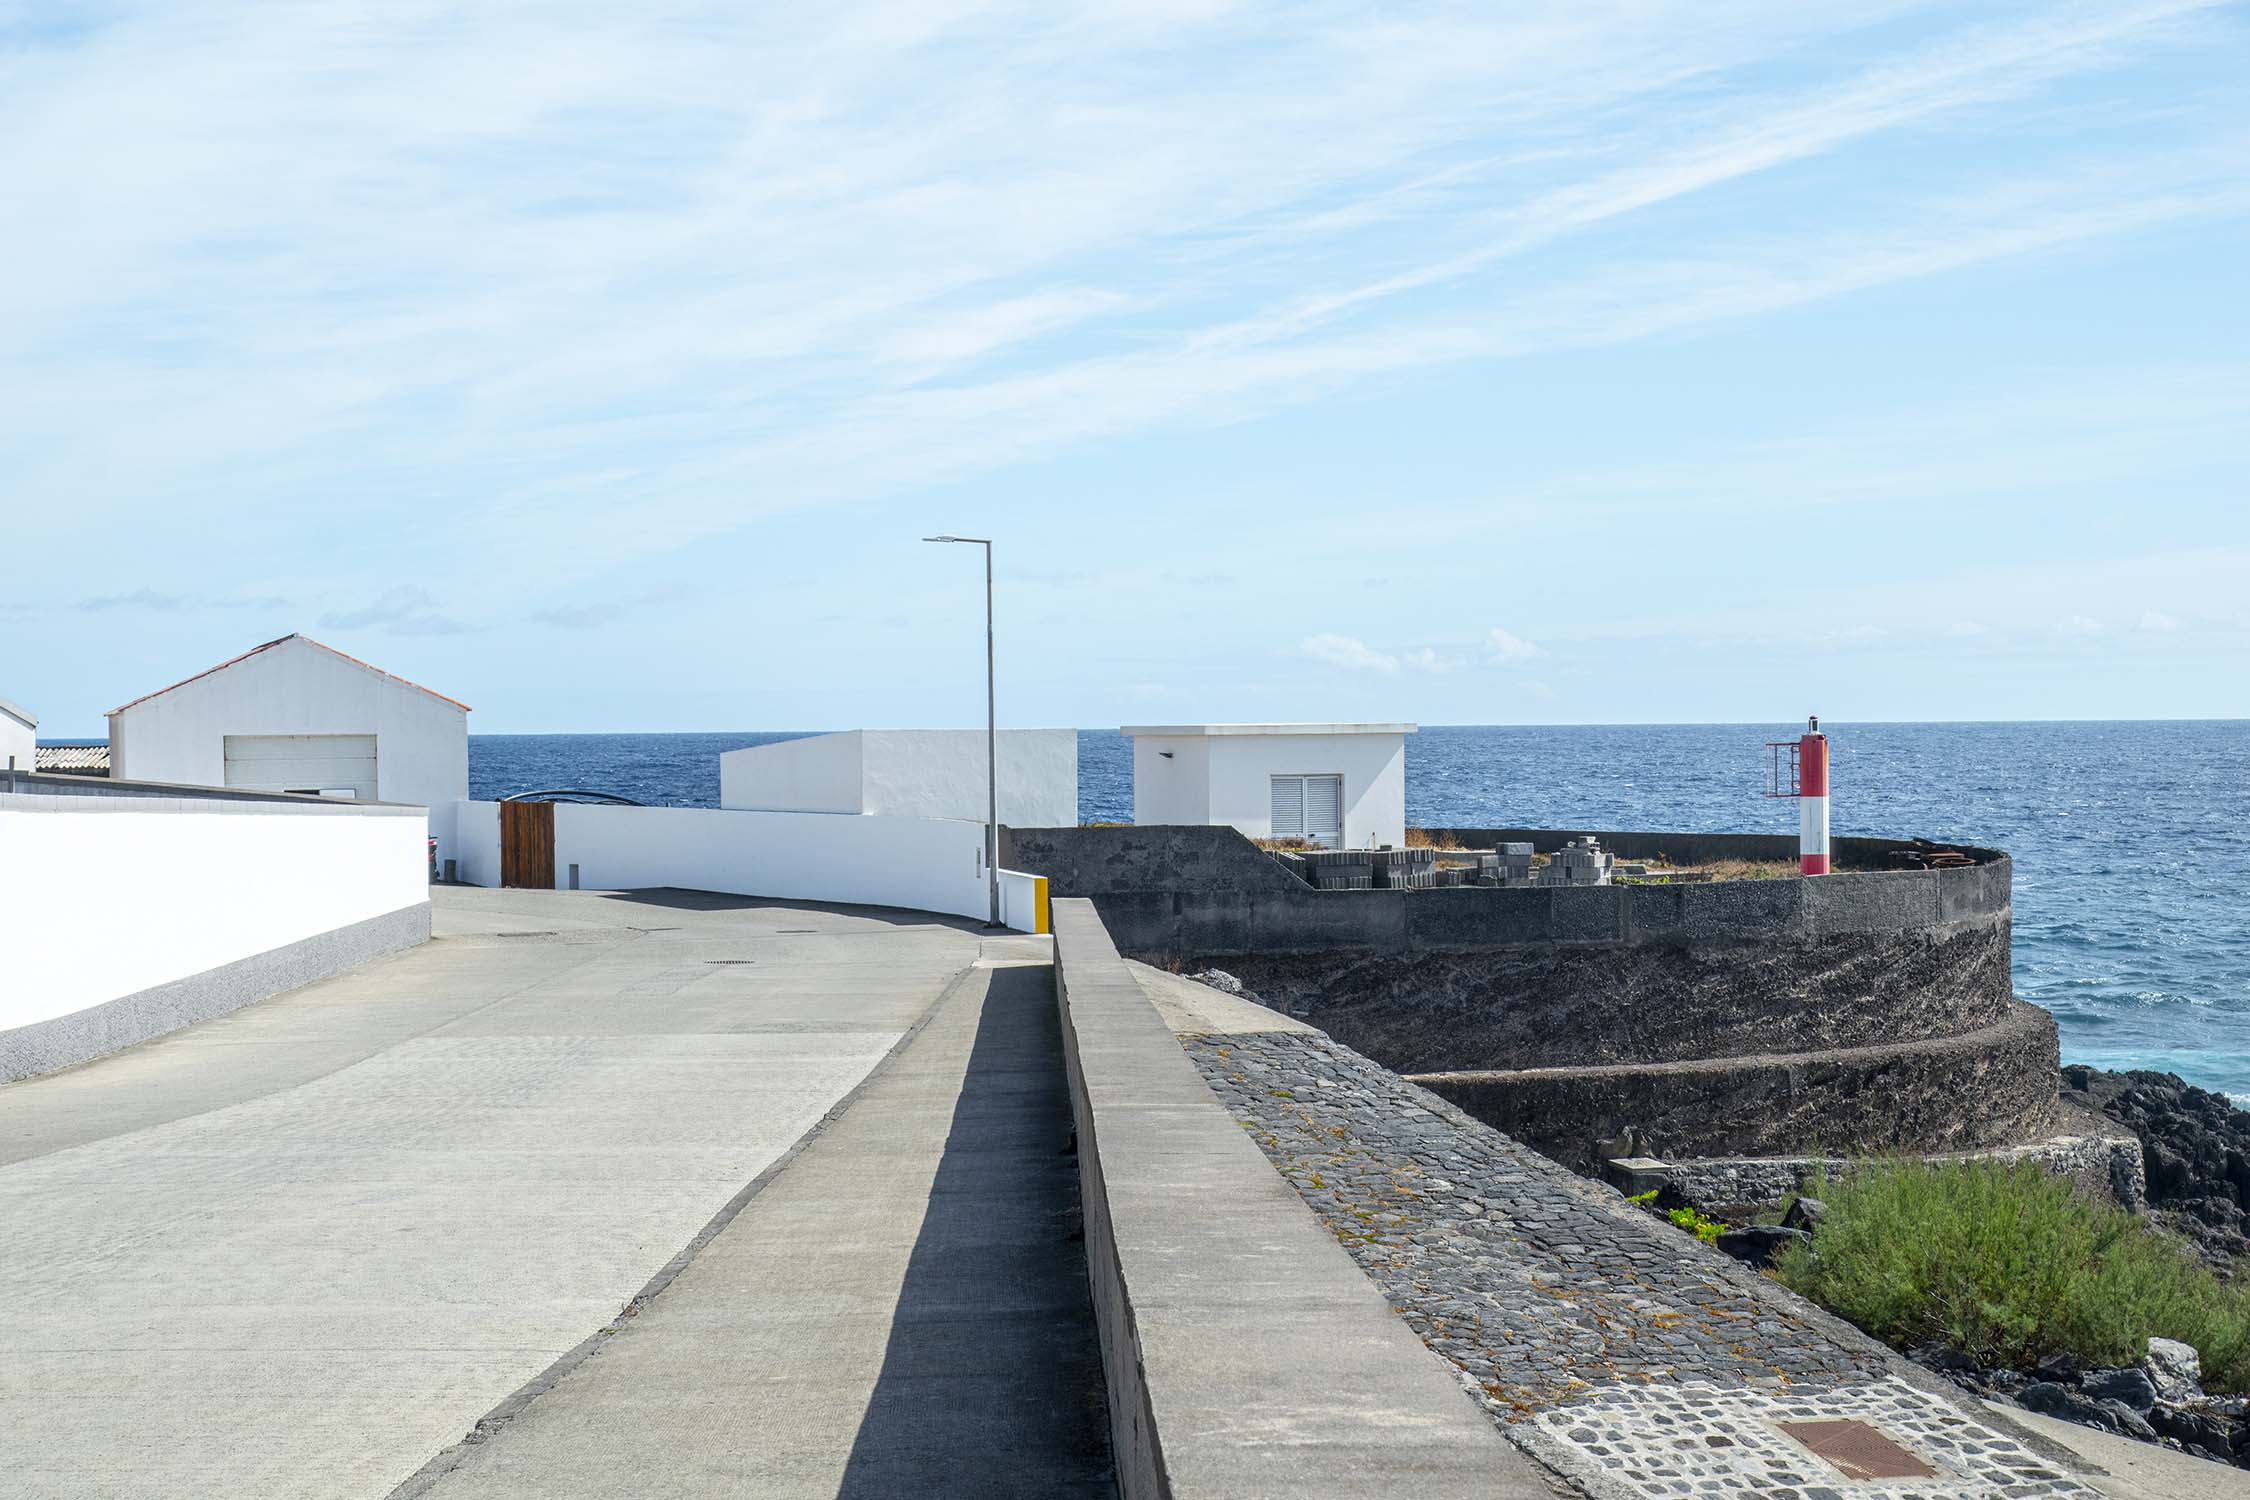 Corvo, Azores, Portugal 2022